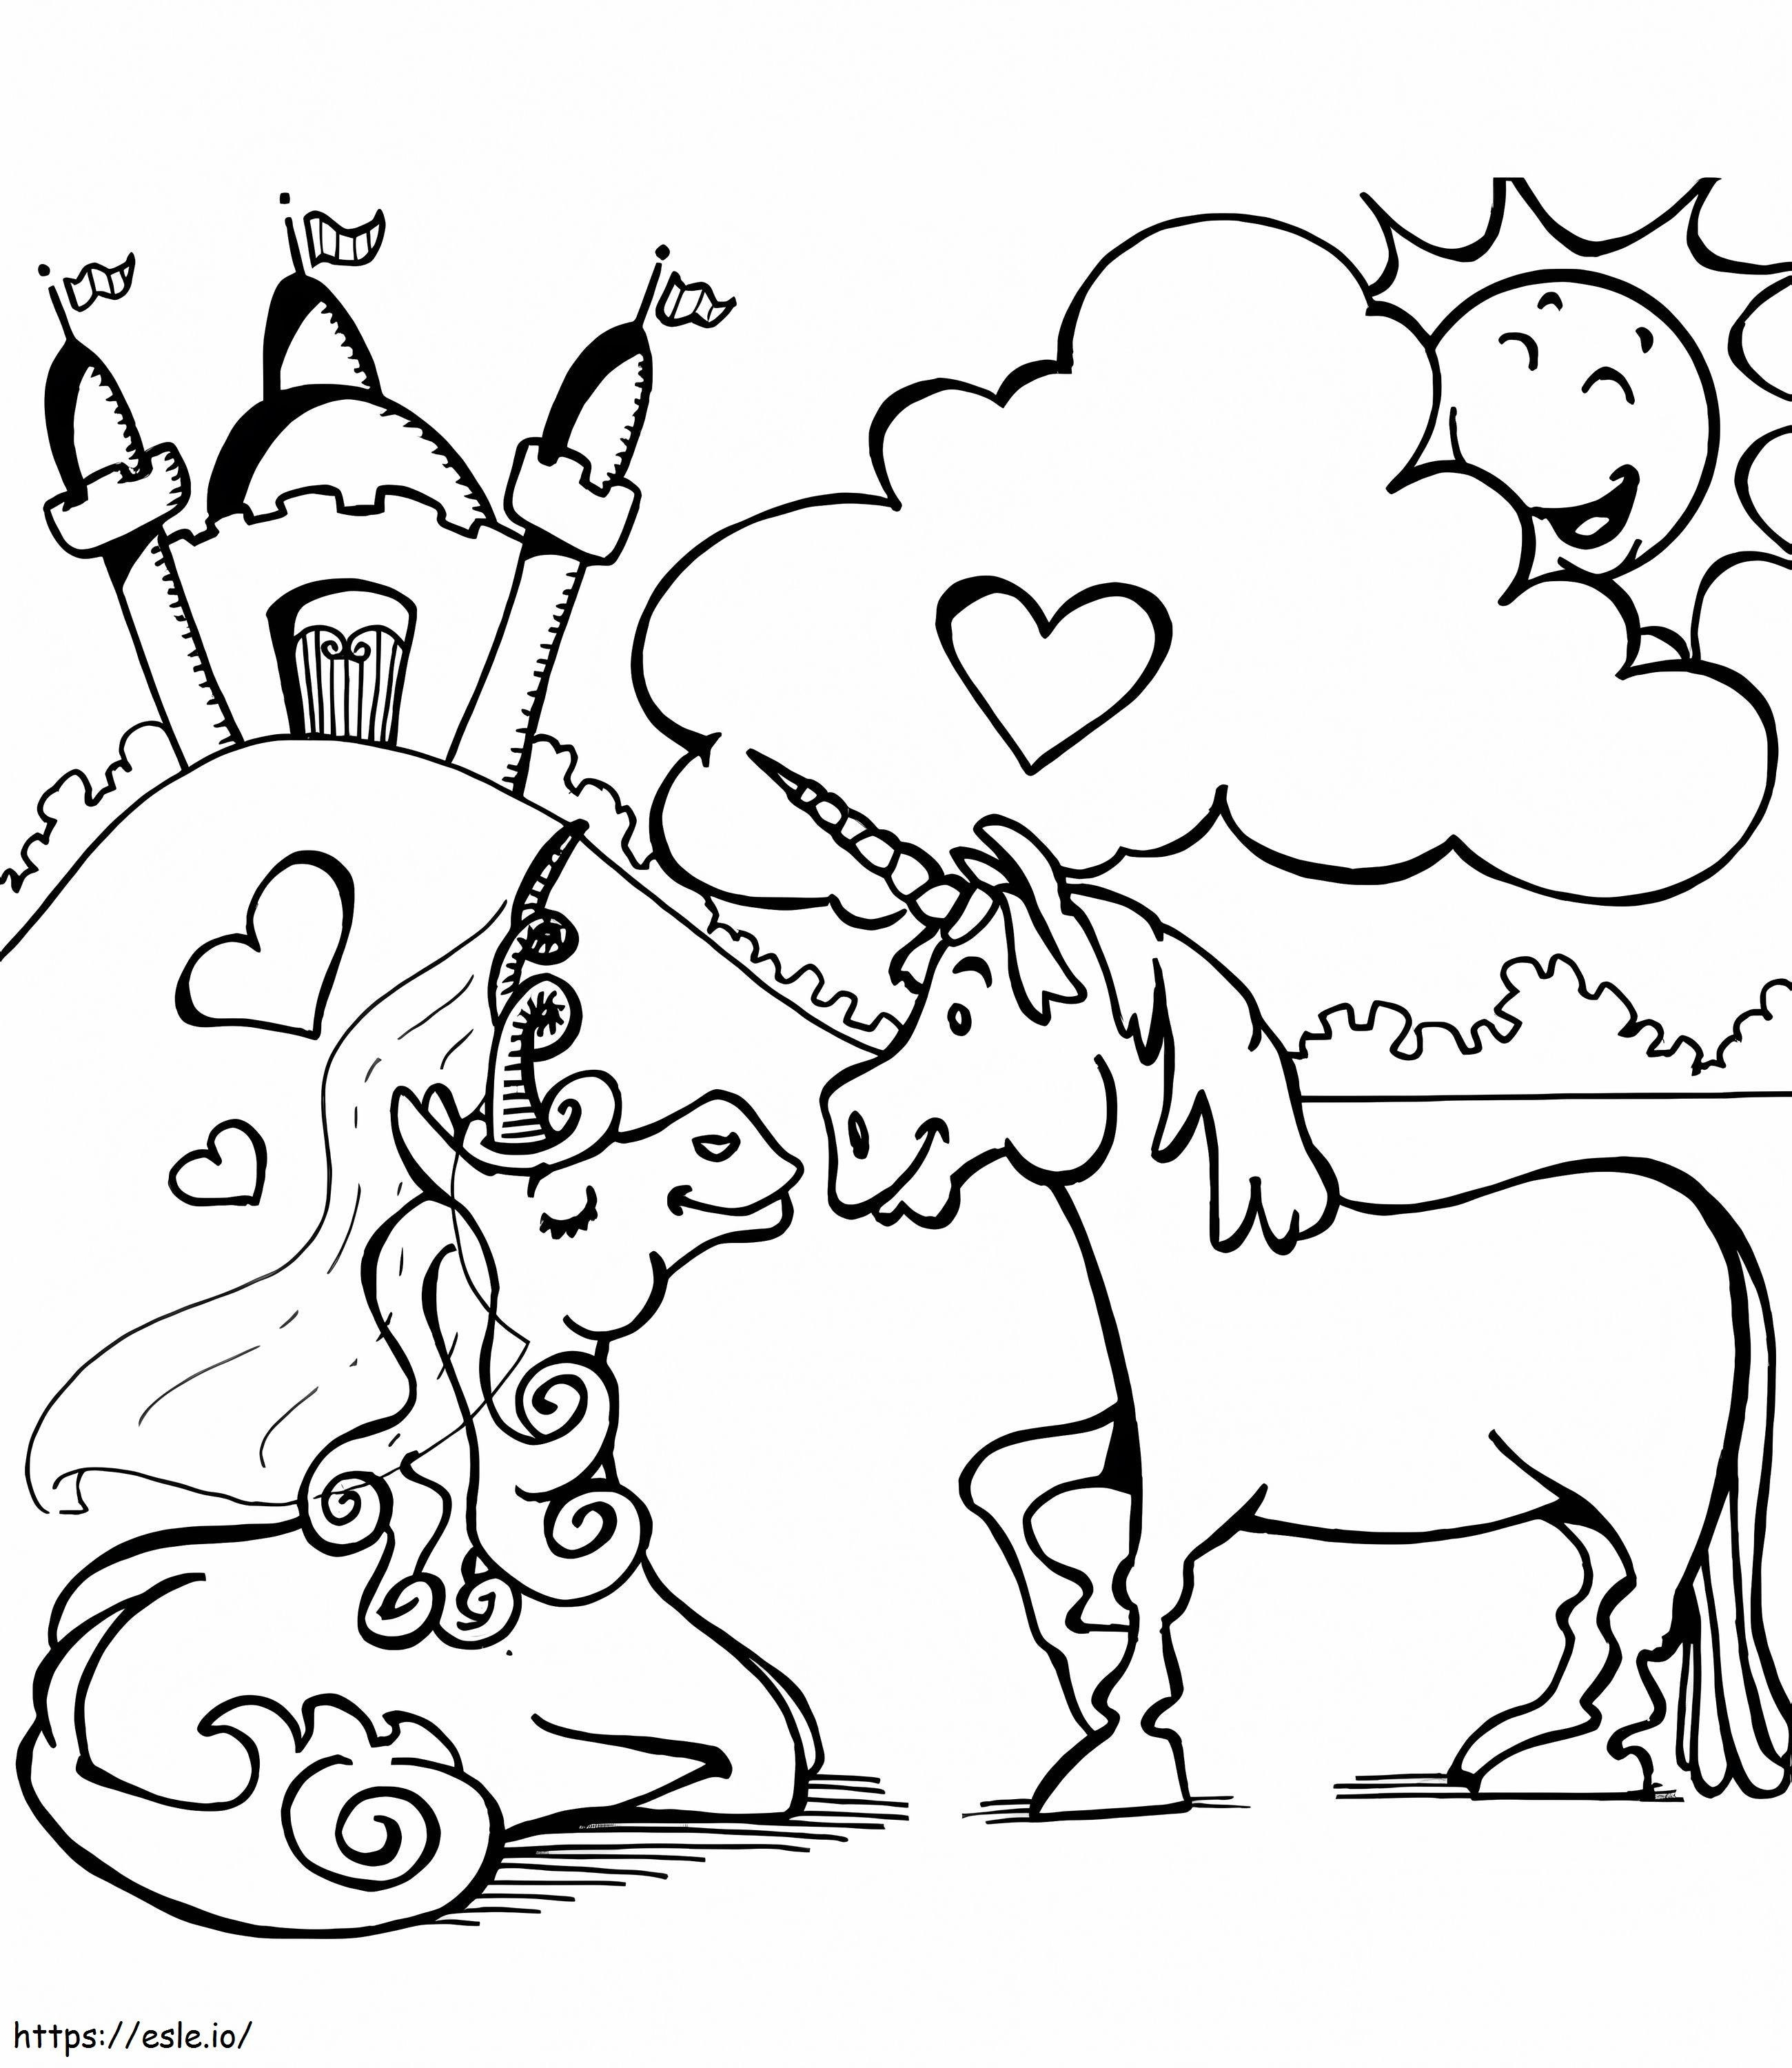 1563843135 Couple Unicorn A4 coloring page